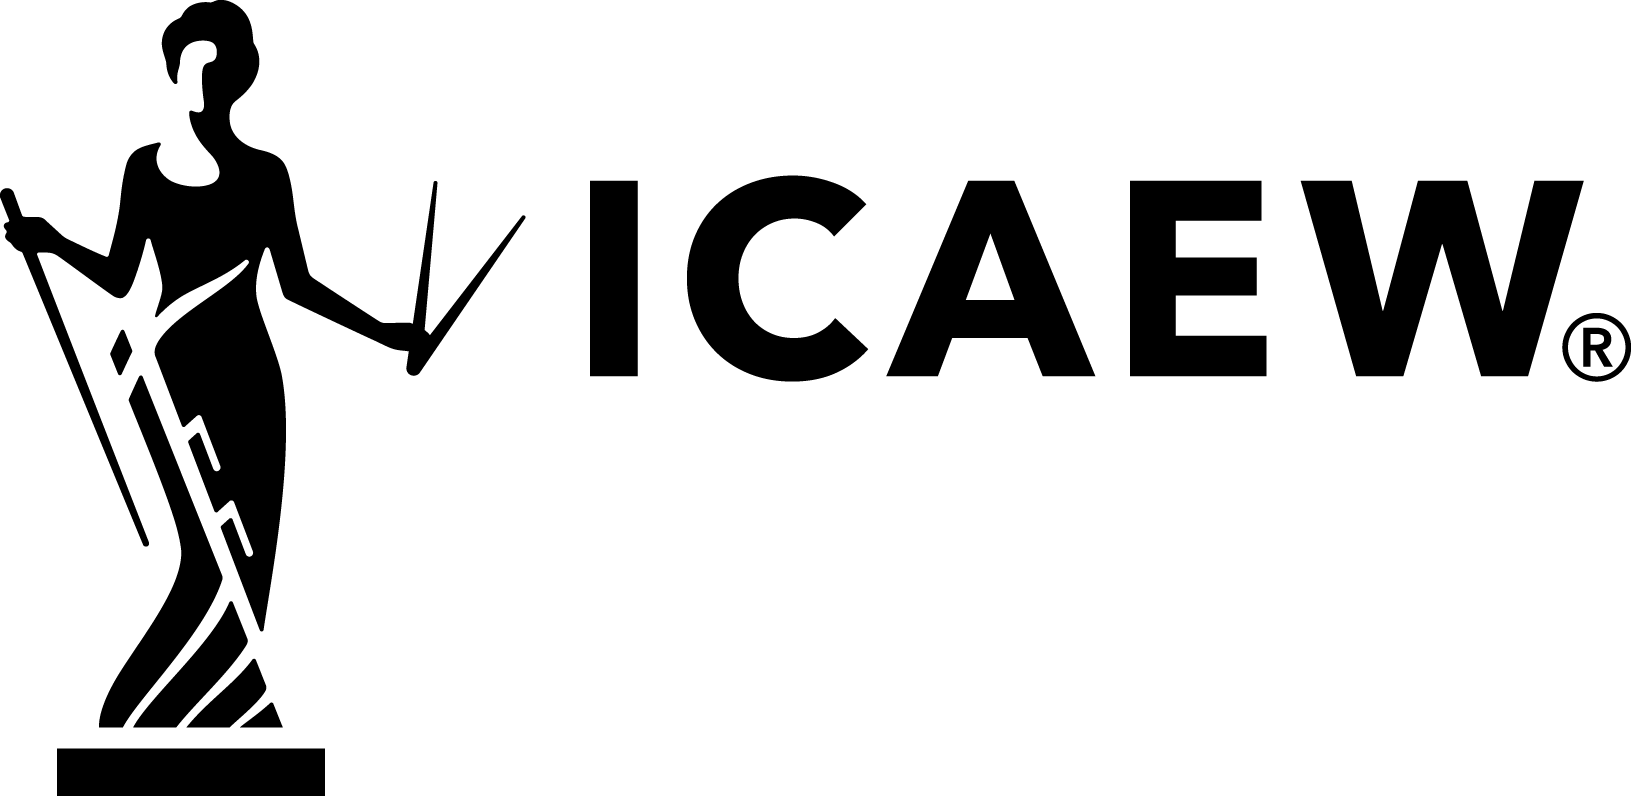 ICAEW_logo